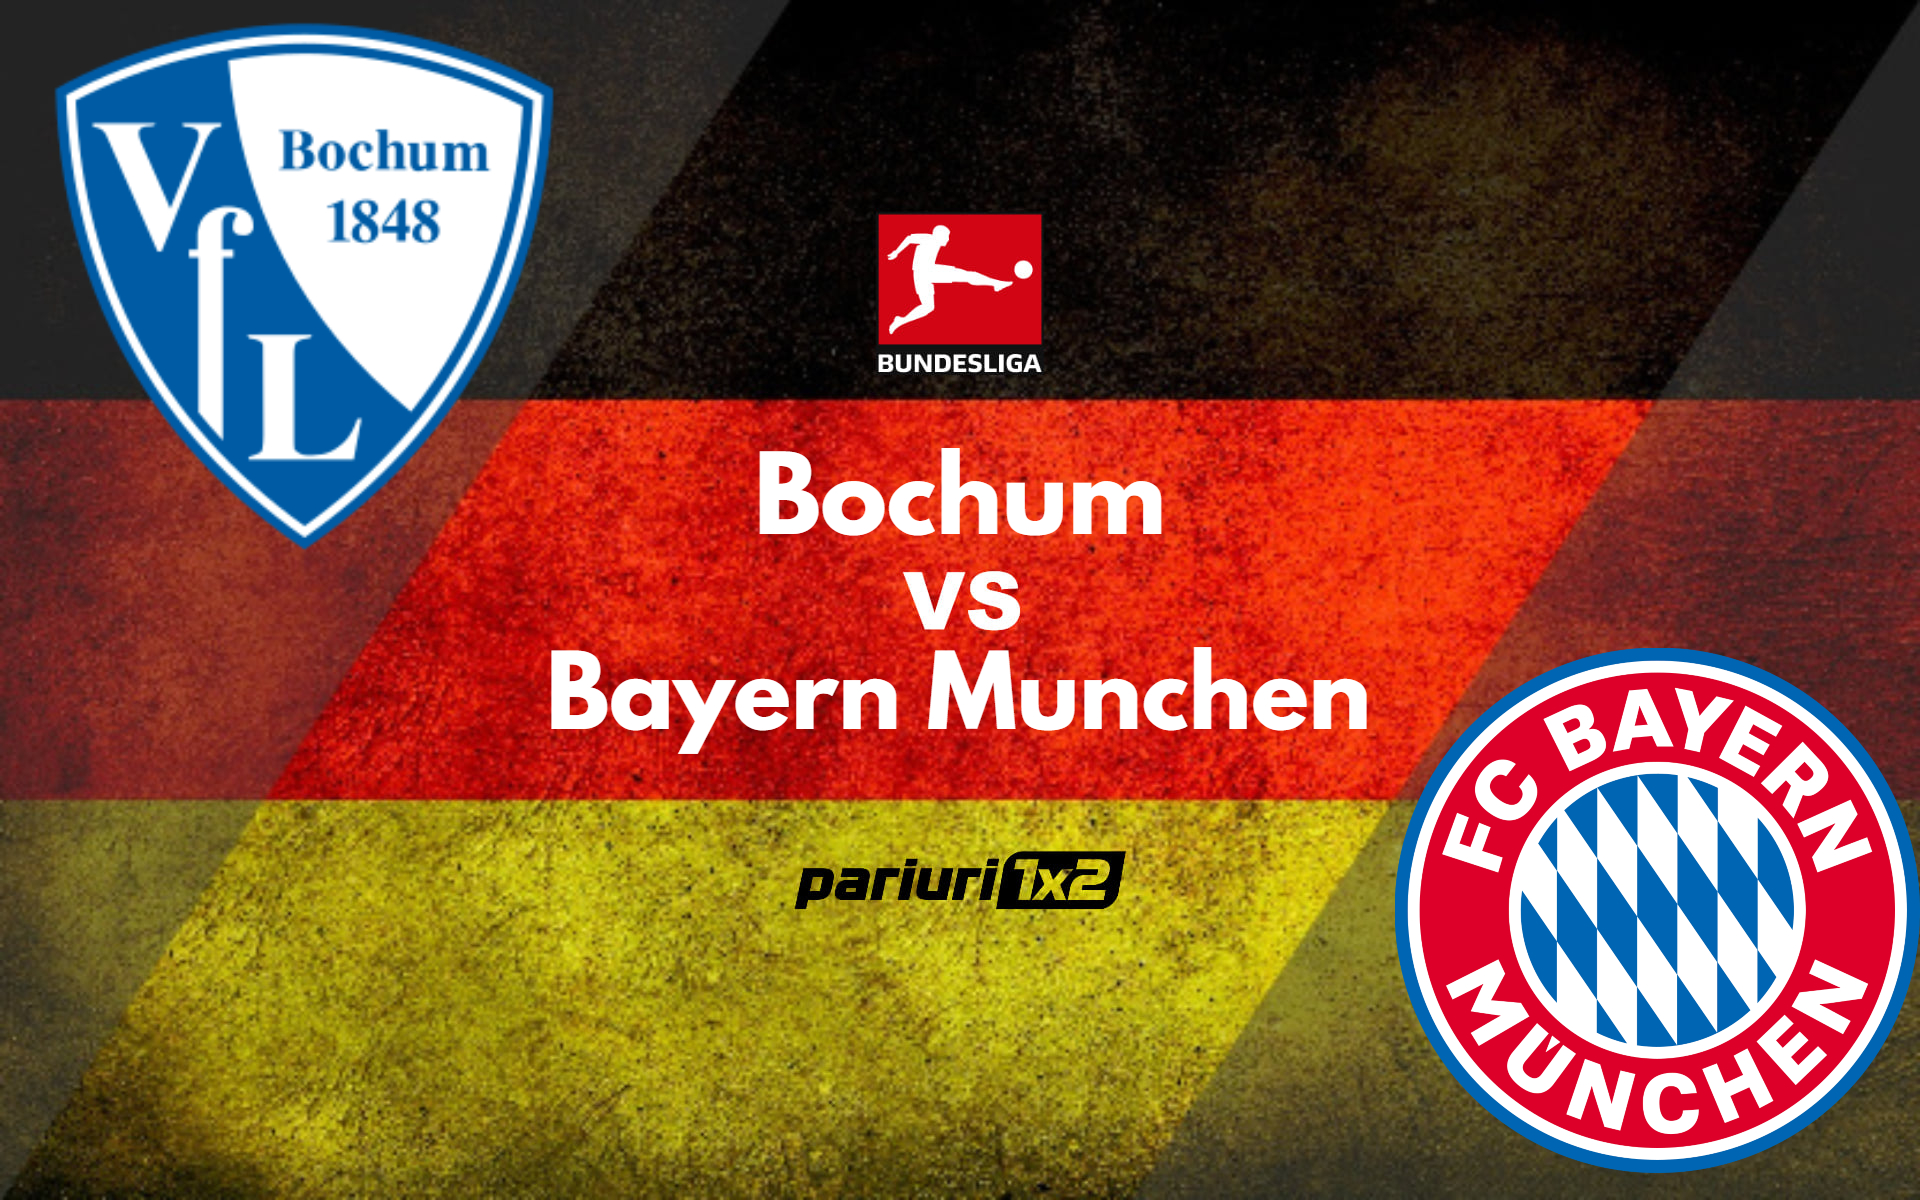 Ponturi fotbal » Bochum – Bayern Munchen: Bavarezii se indreapta catre cel de-al 10-lea titlu consecutiv in Bundesliga. Pariem pe o cota de 1.88!